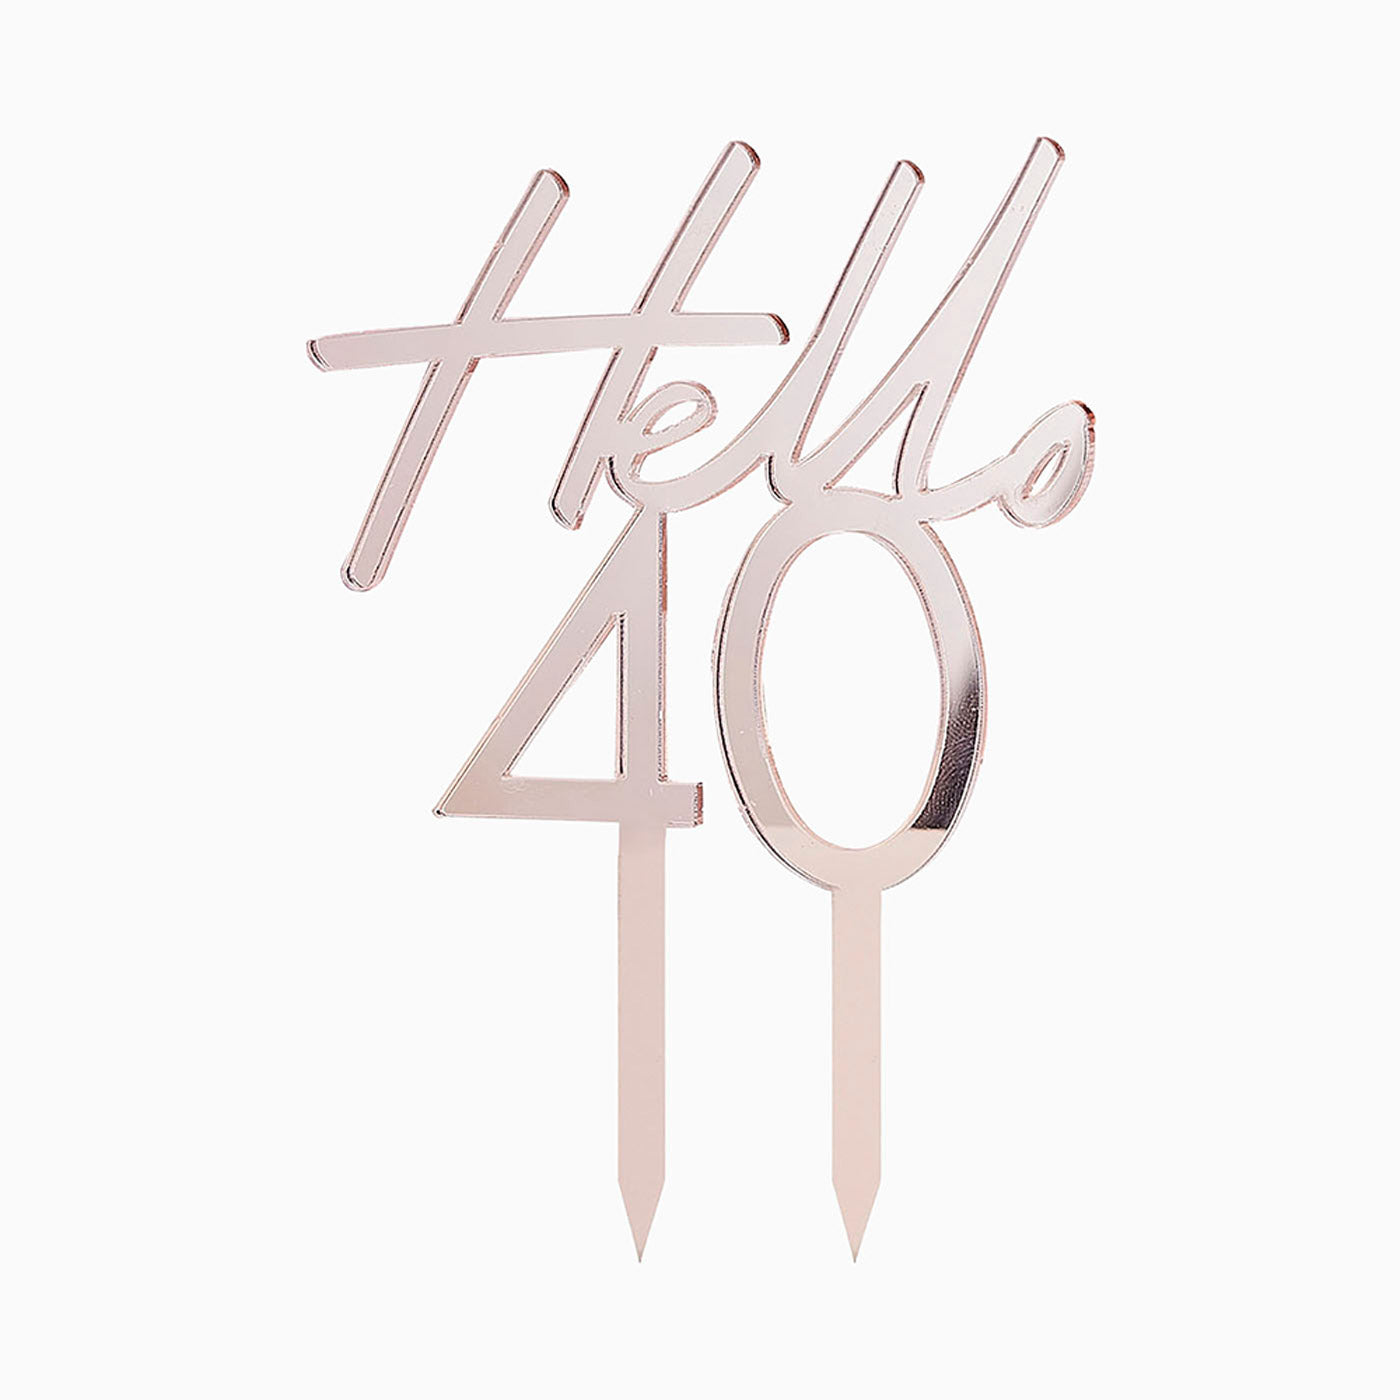 Topper -Kuchen "Hallo 40"